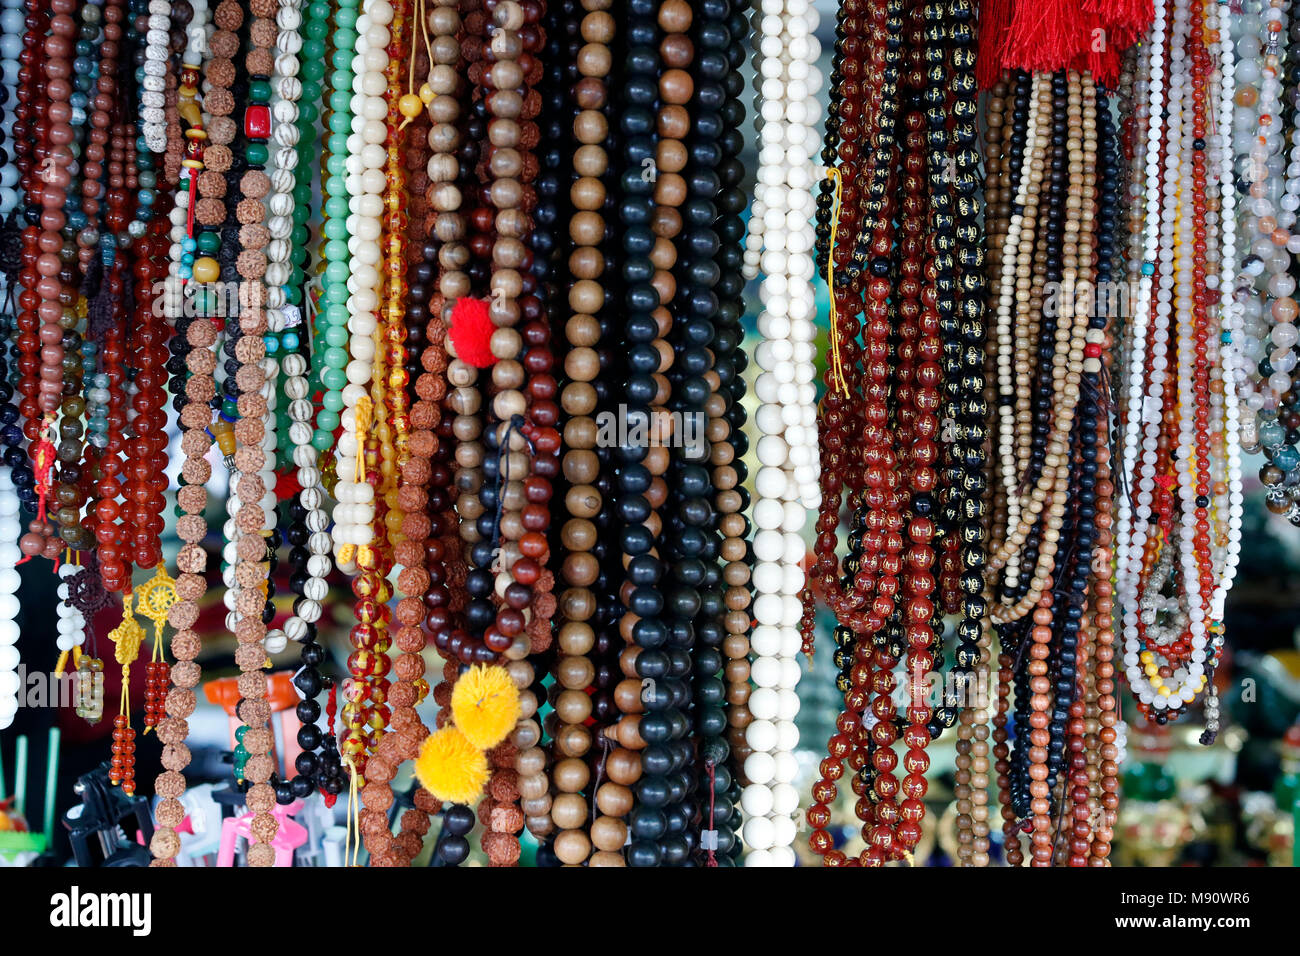 Truc Lam buddhistischer Tempel. Verschiedene buddhistische religiöse Merchandise Artikel zum Verkauf. Gebet Perlen oder Malas. Dalat. Vietnam. Stockfoto